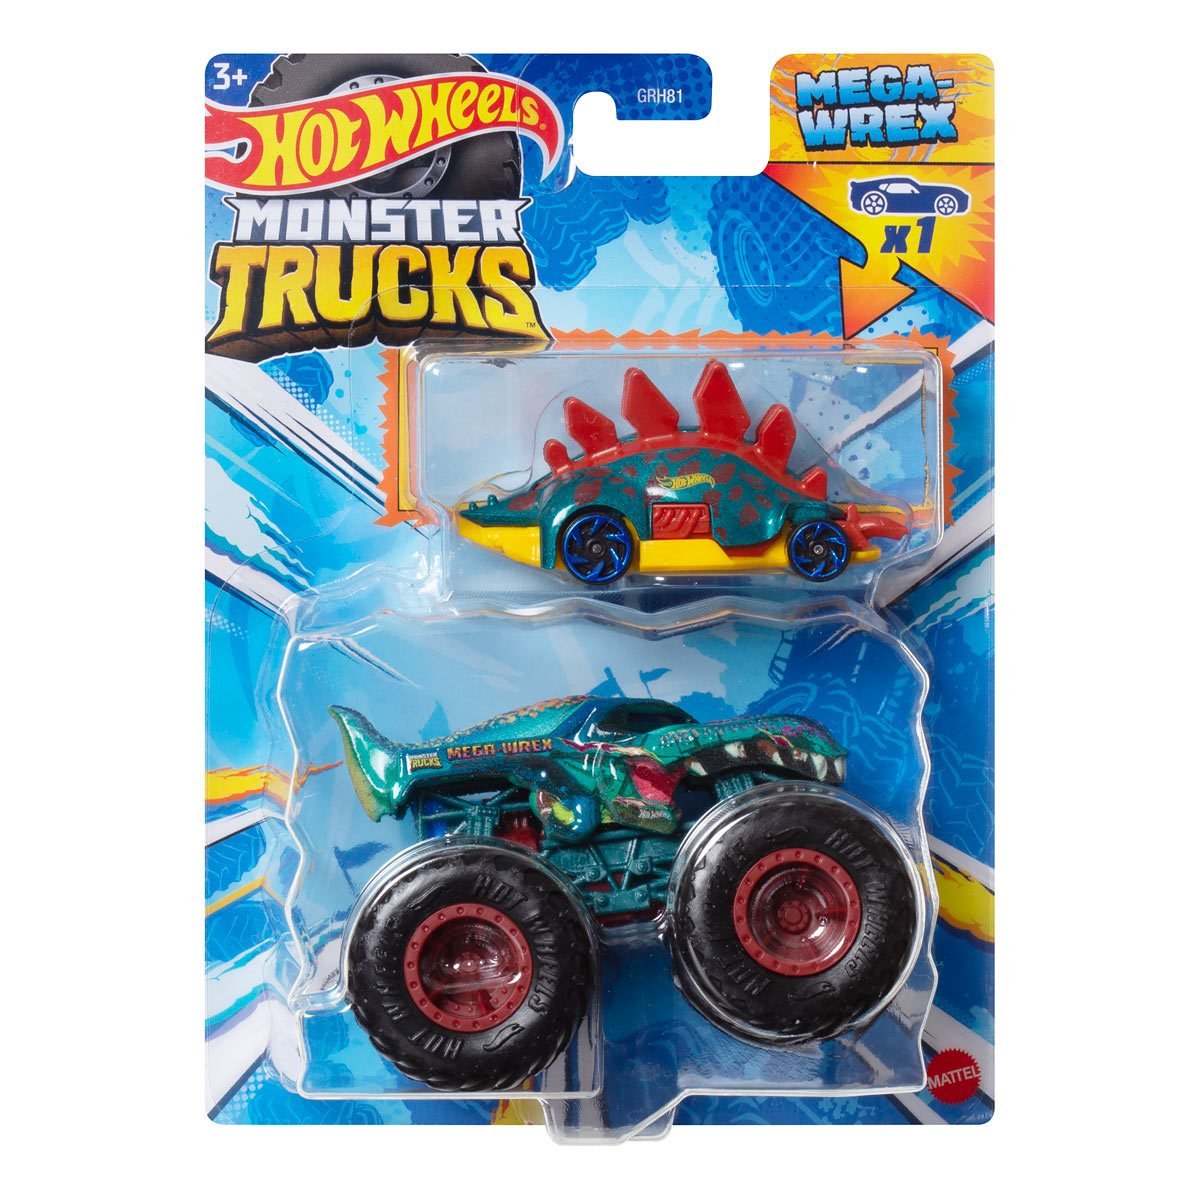 Pack Hot Wheels Monster Trucks